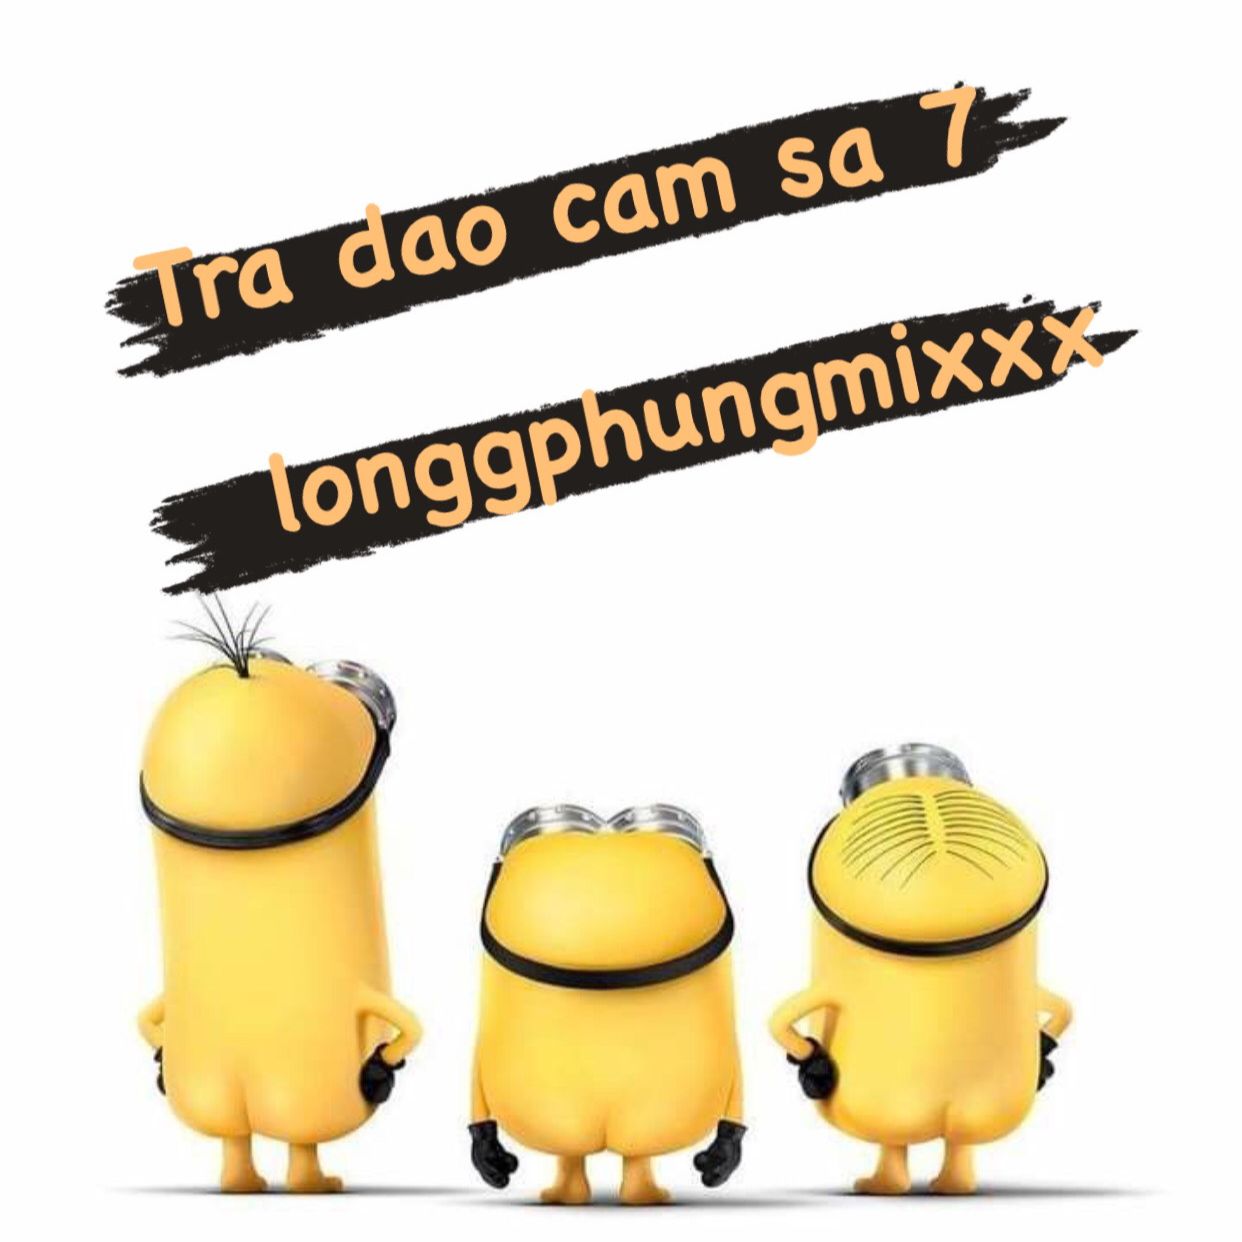 ទាញយក Tra Dao Cam Sa 7 - 132 longgphungmixxx